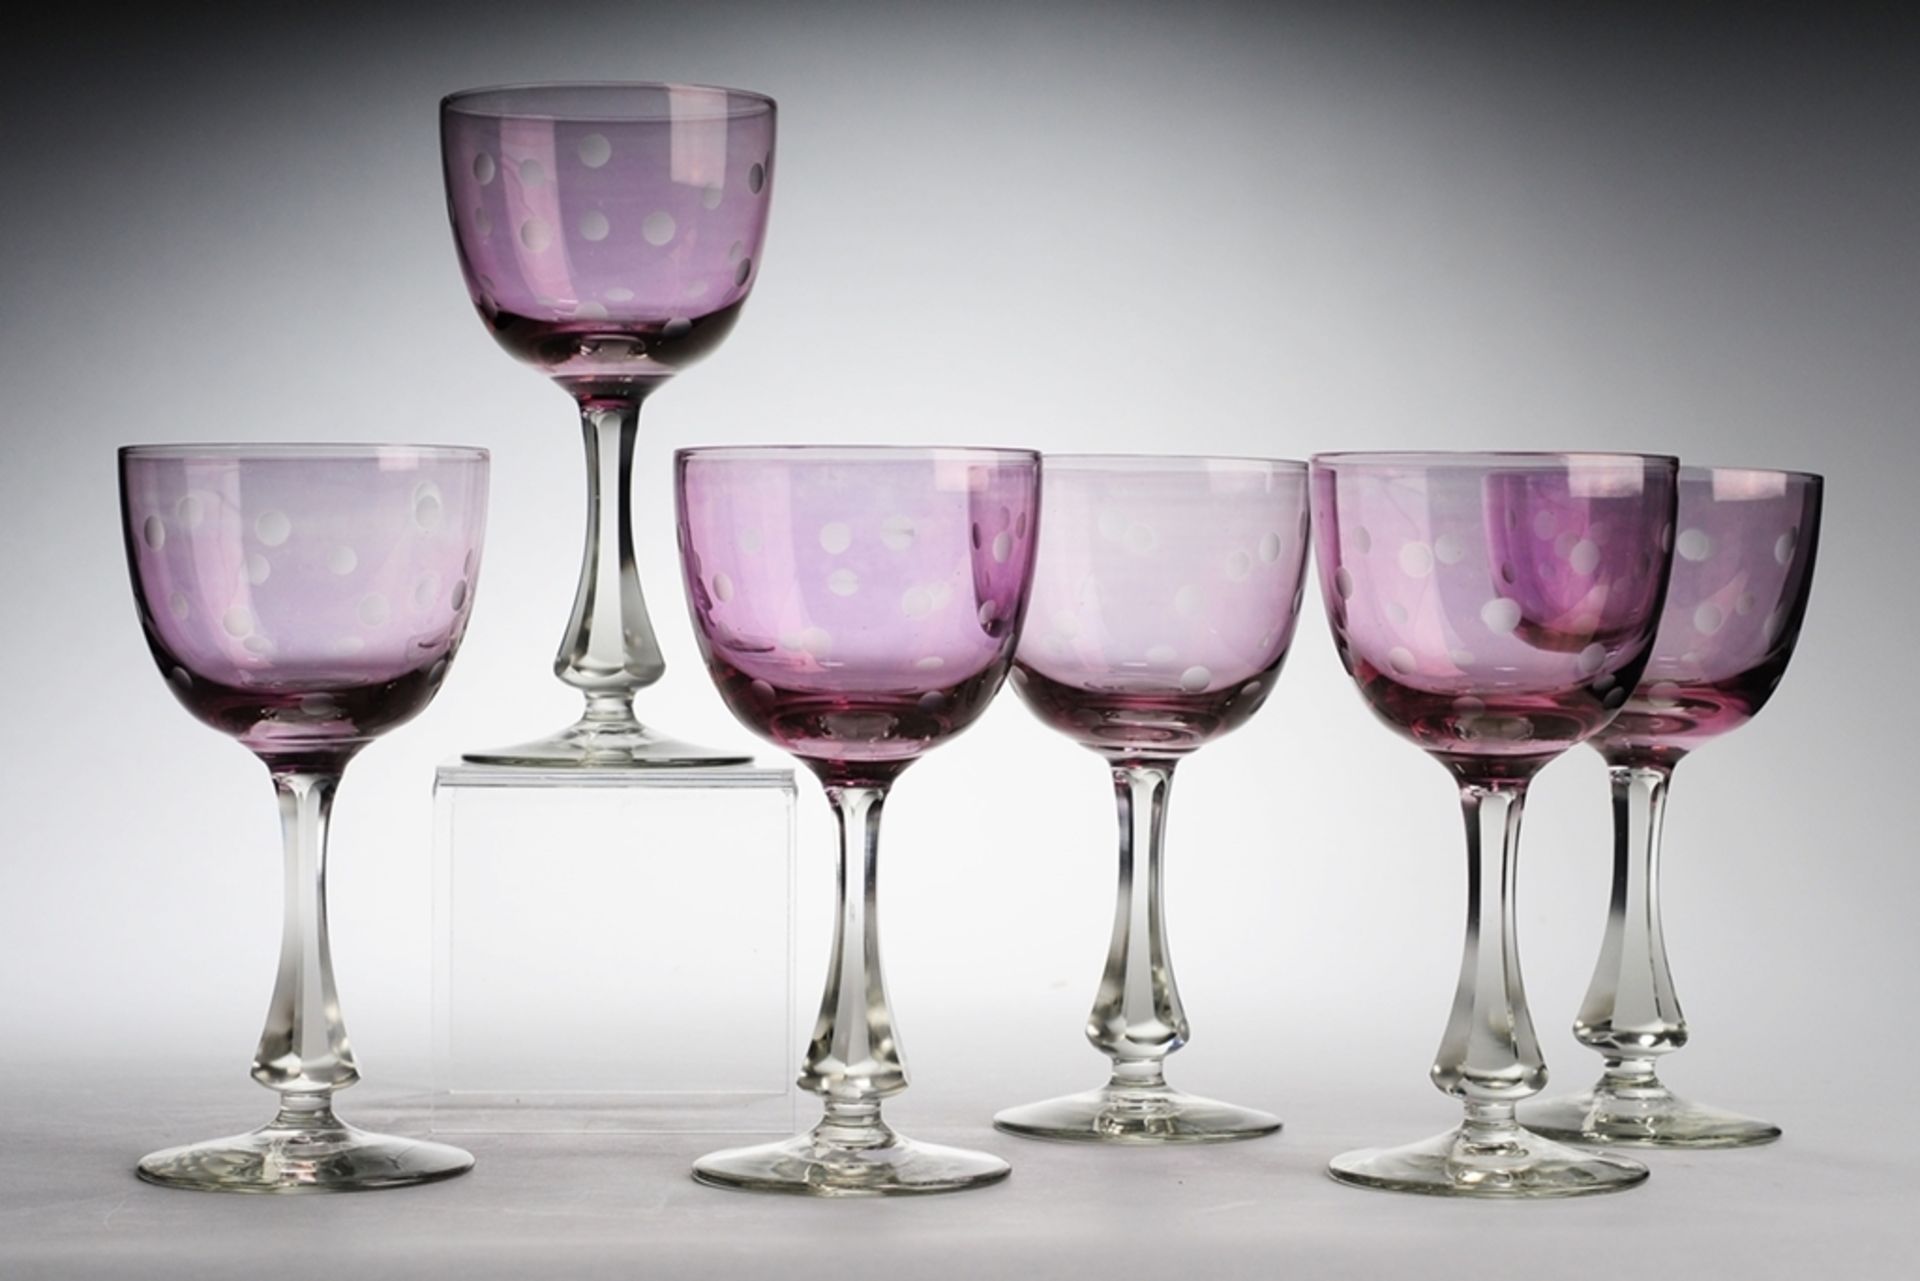 Sechs WeingläserFarbloses Glas, part. violett überfangen. Formgeblasen. Scheibenfuß, facet